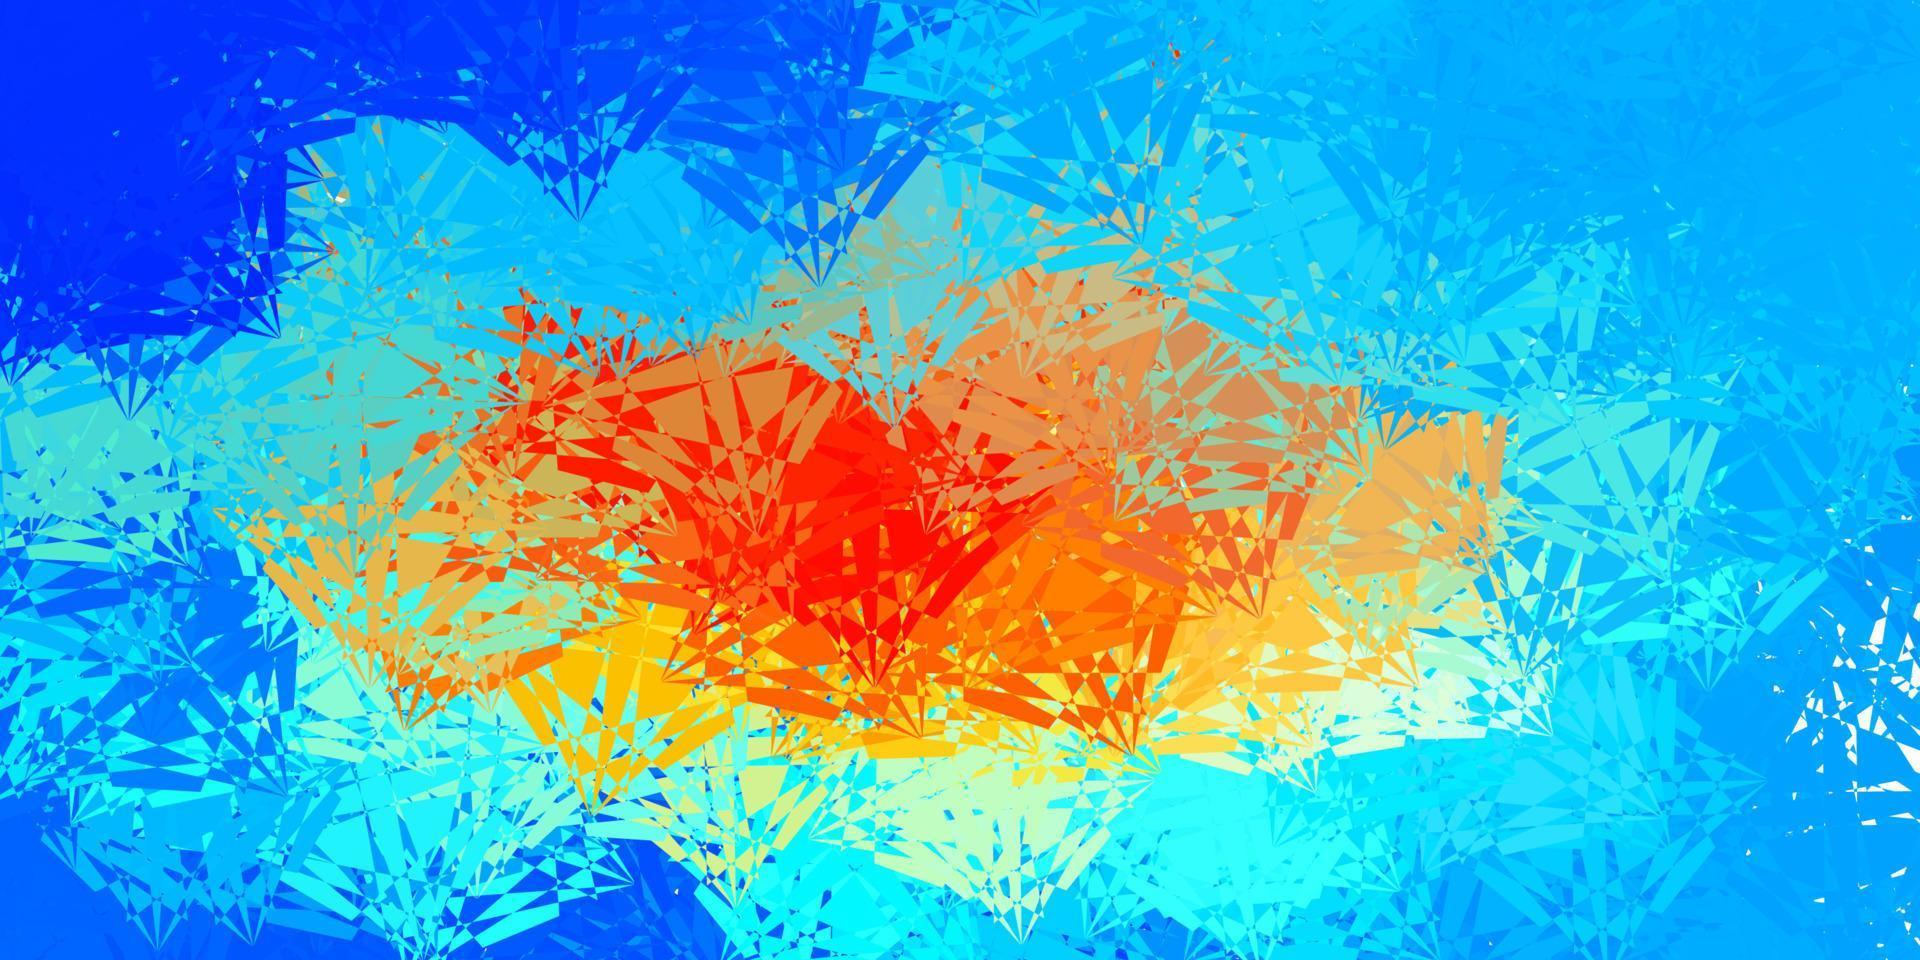 sfondo vettoriale azzurro, rosso con forme poligonali.